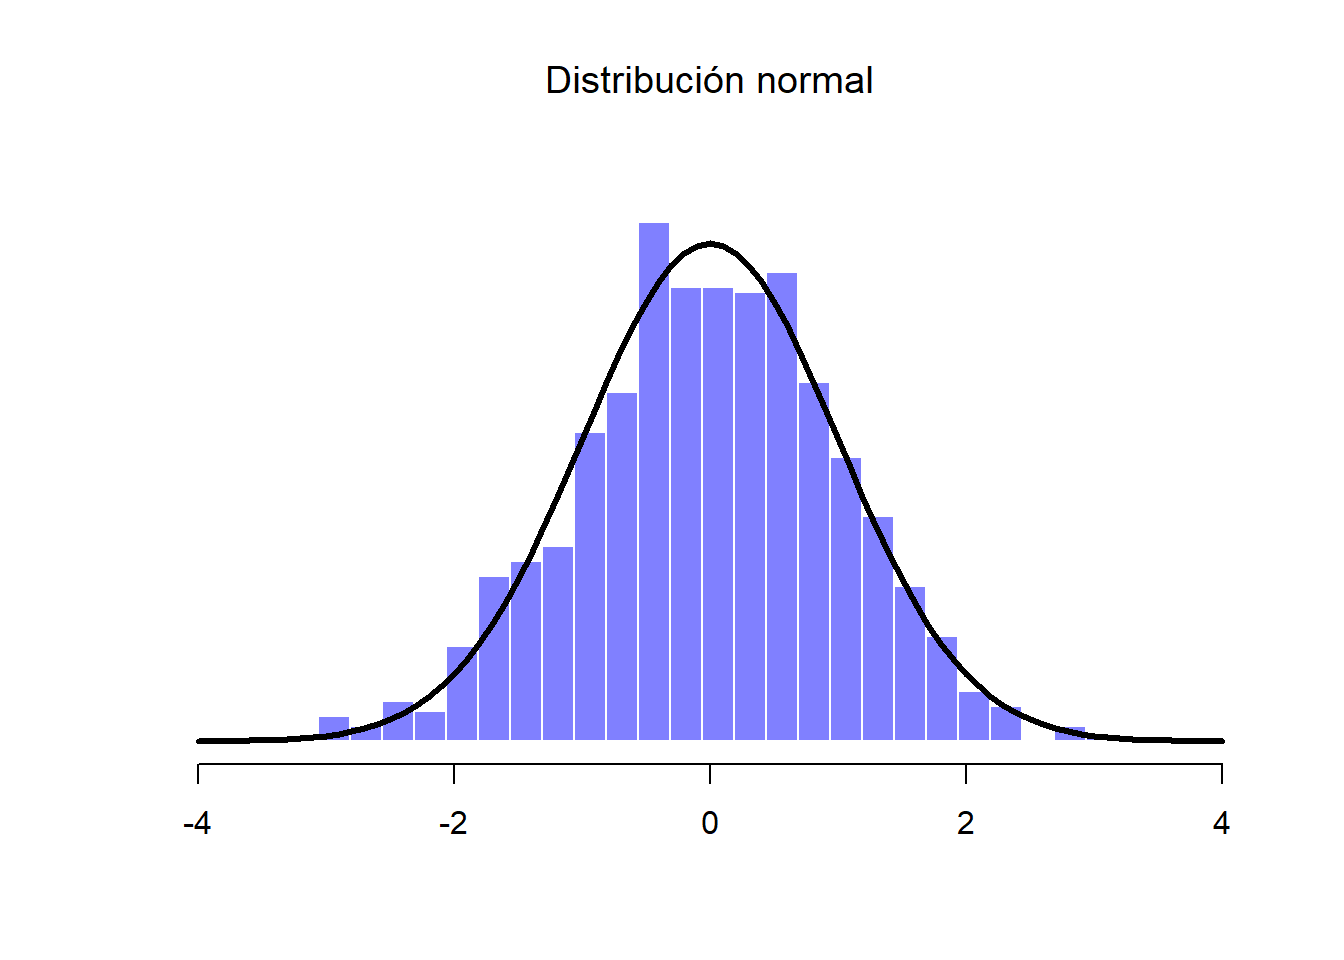 Distribución normal de la Muestra A (histograma), junto con la distribución normal verdadera (línea sólida)